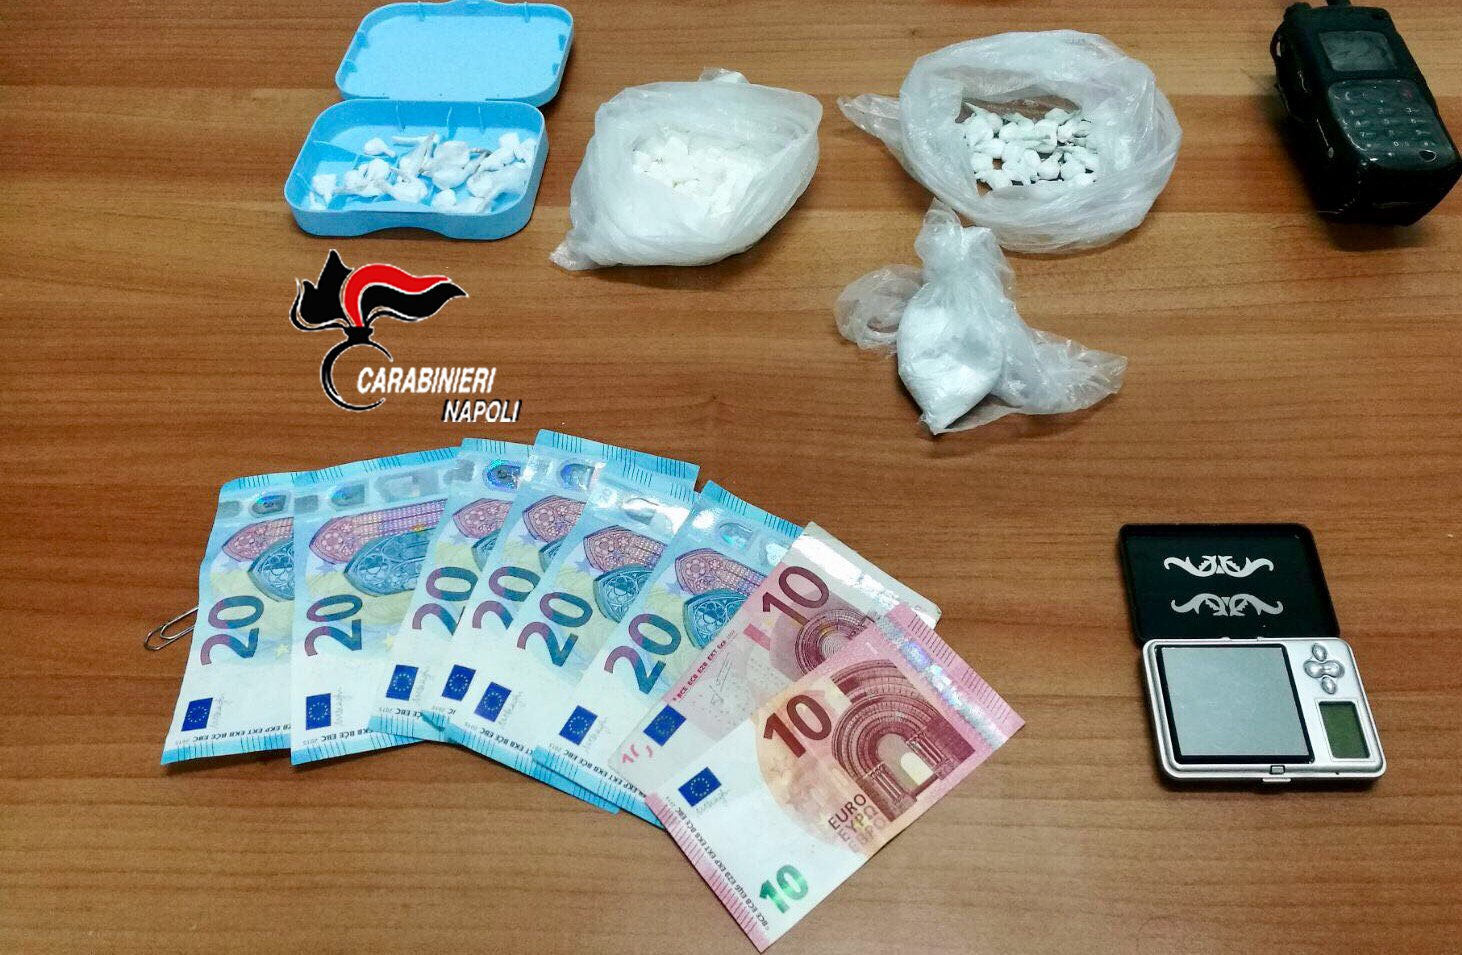  Pomigliano D’Arco: carabinieri arrestano pasticciere con un etto di cocaina